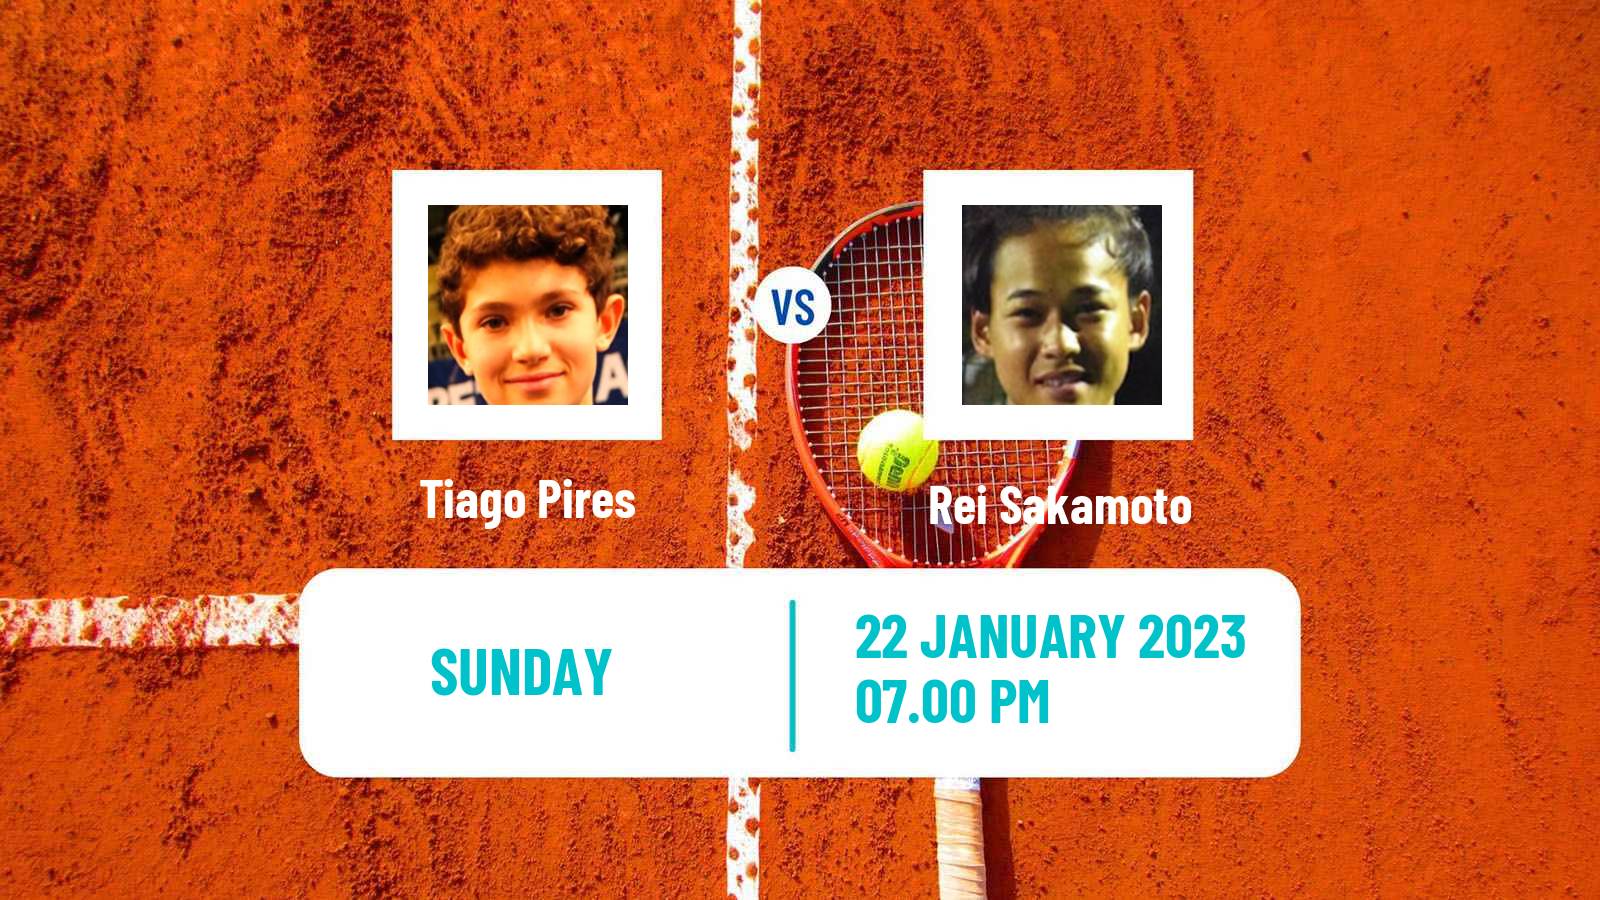 Tennis Boys Singles Australian Open Tiago Pires - Rei Sakamoto